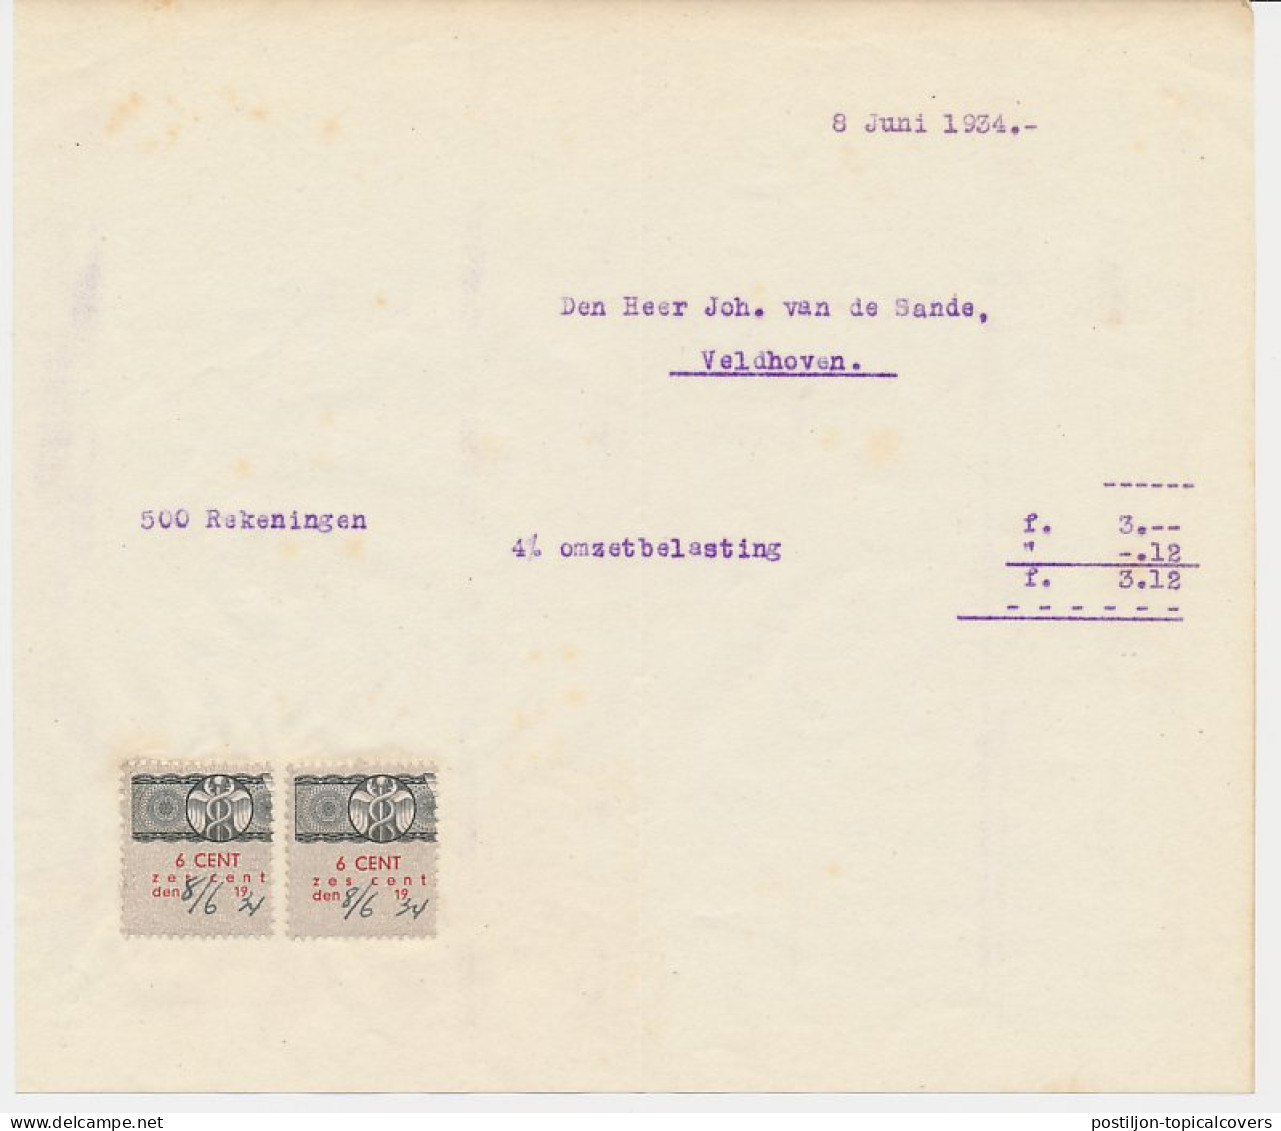 Omzetbelasting 6 CENT - Veldhoven 1934 - Fiscaux